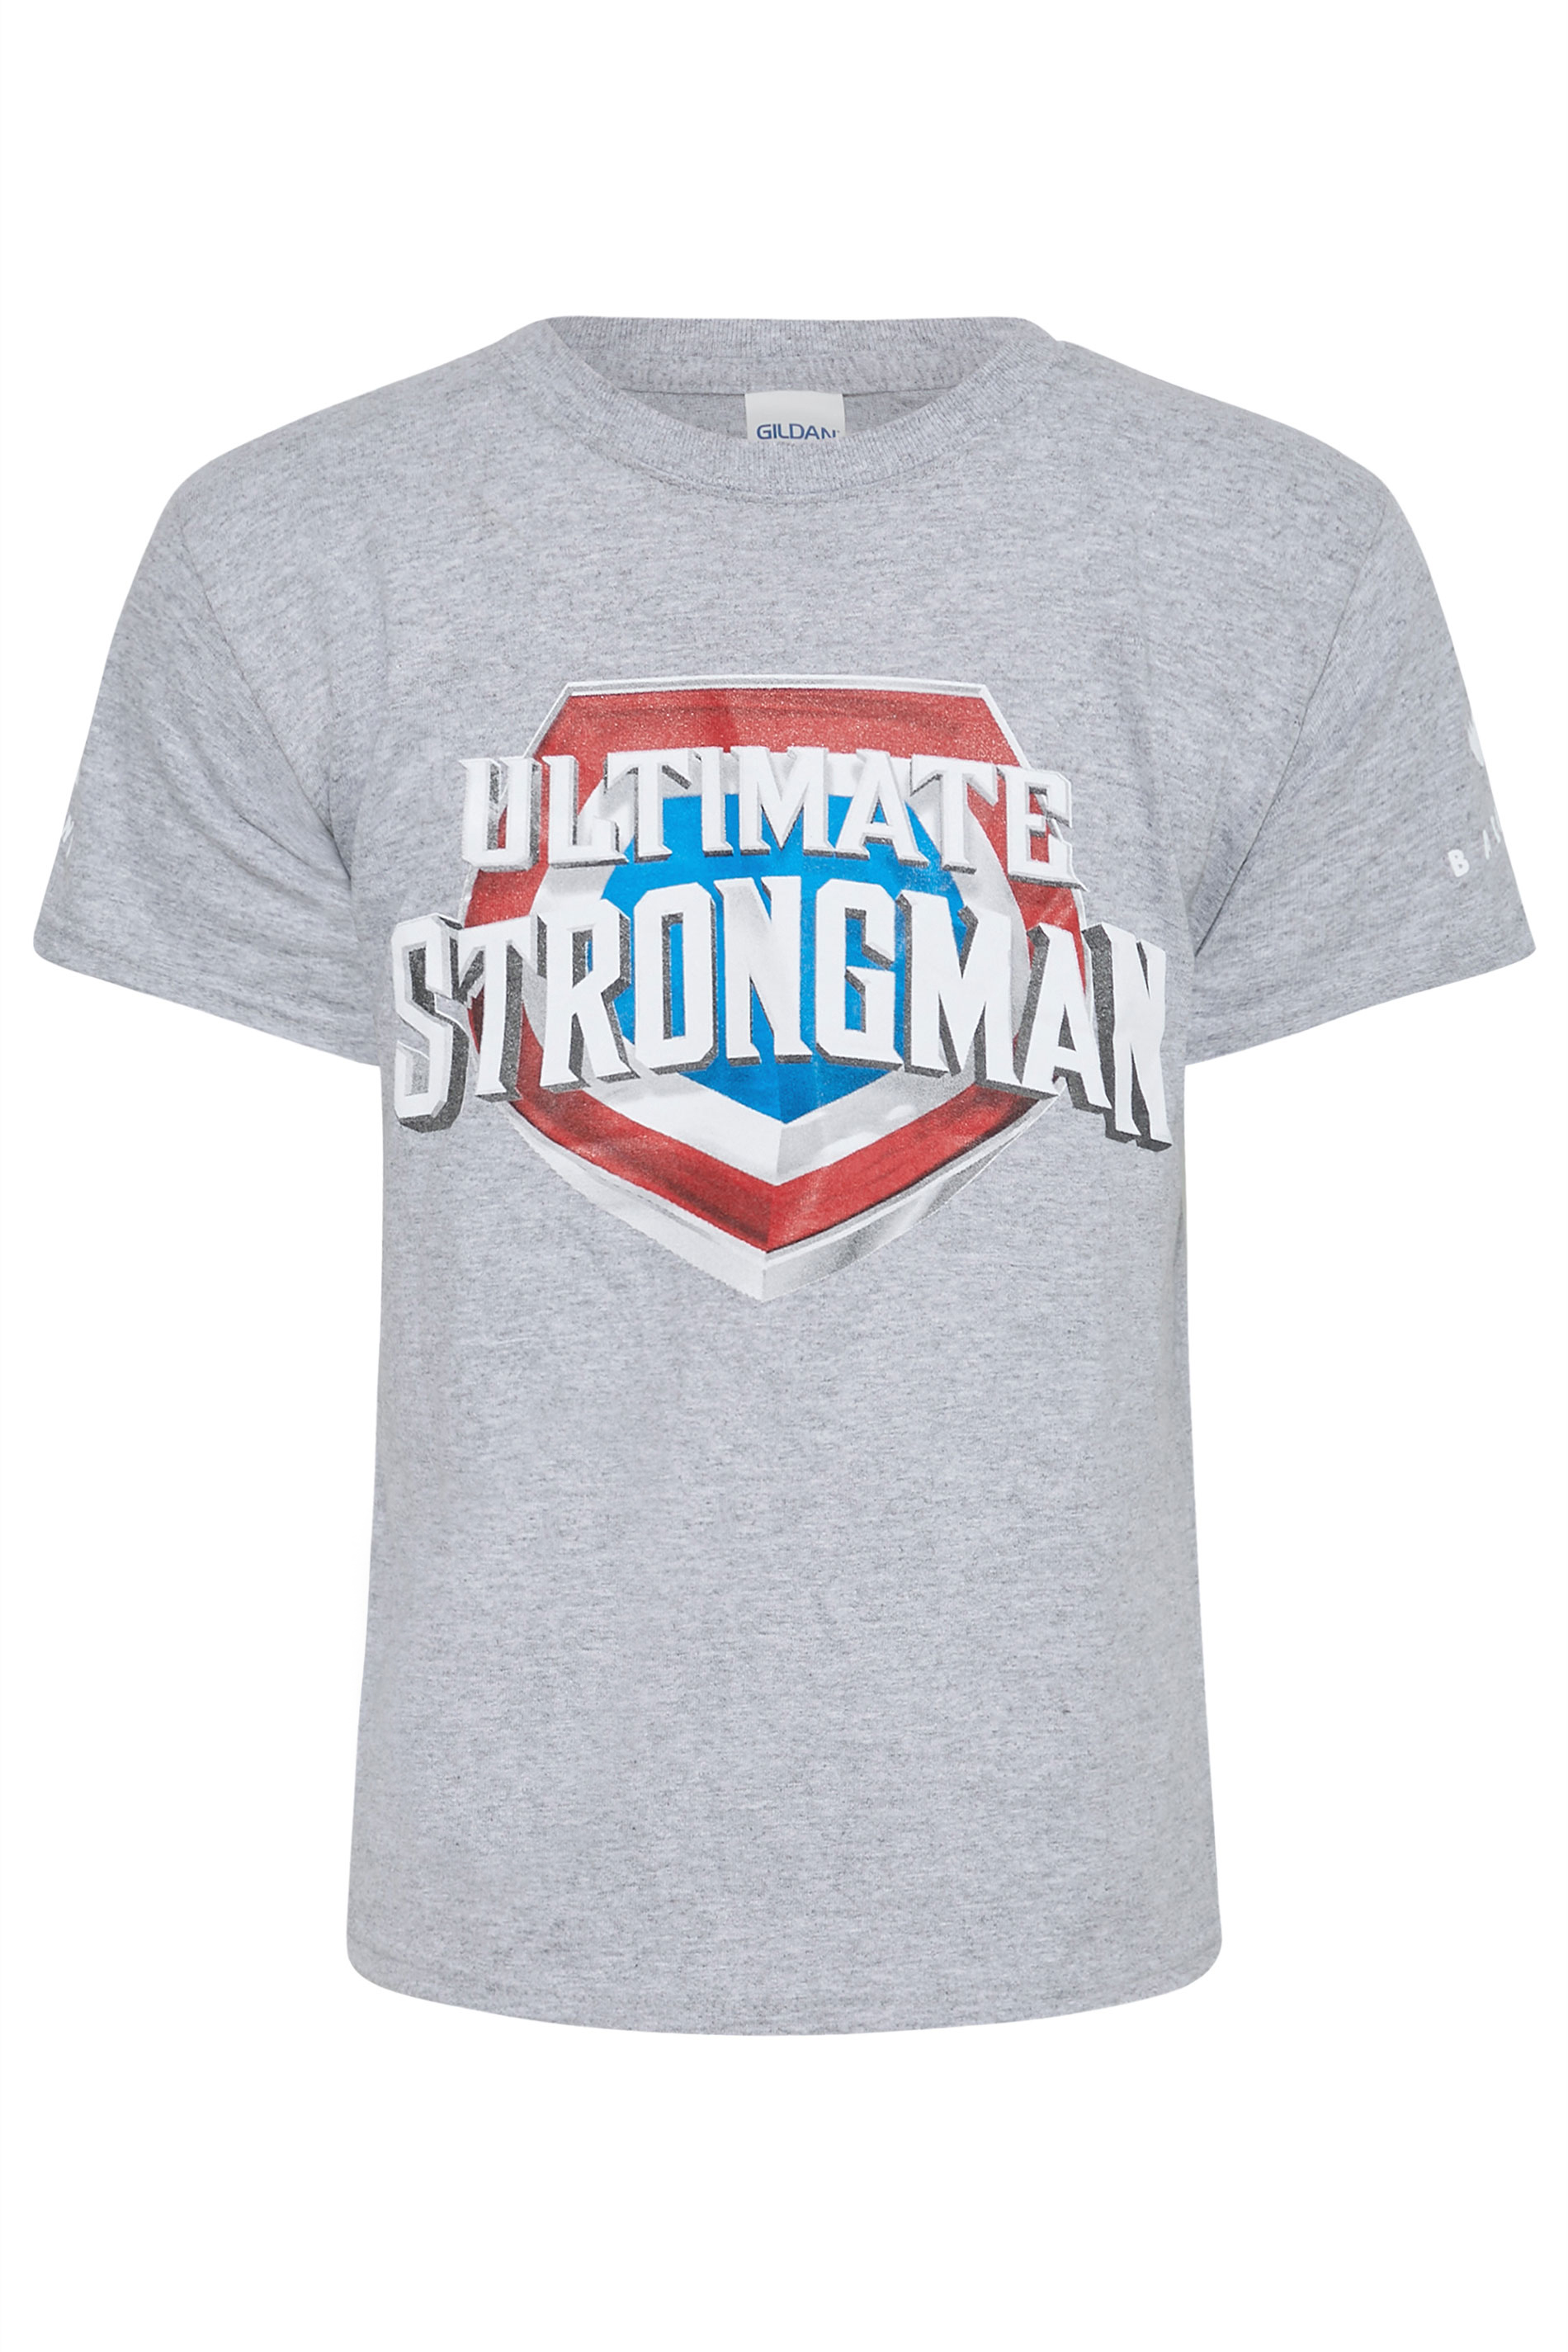 BadRhino Boys Grey Ultimate Strongman T-Shirt | BadRhino 1